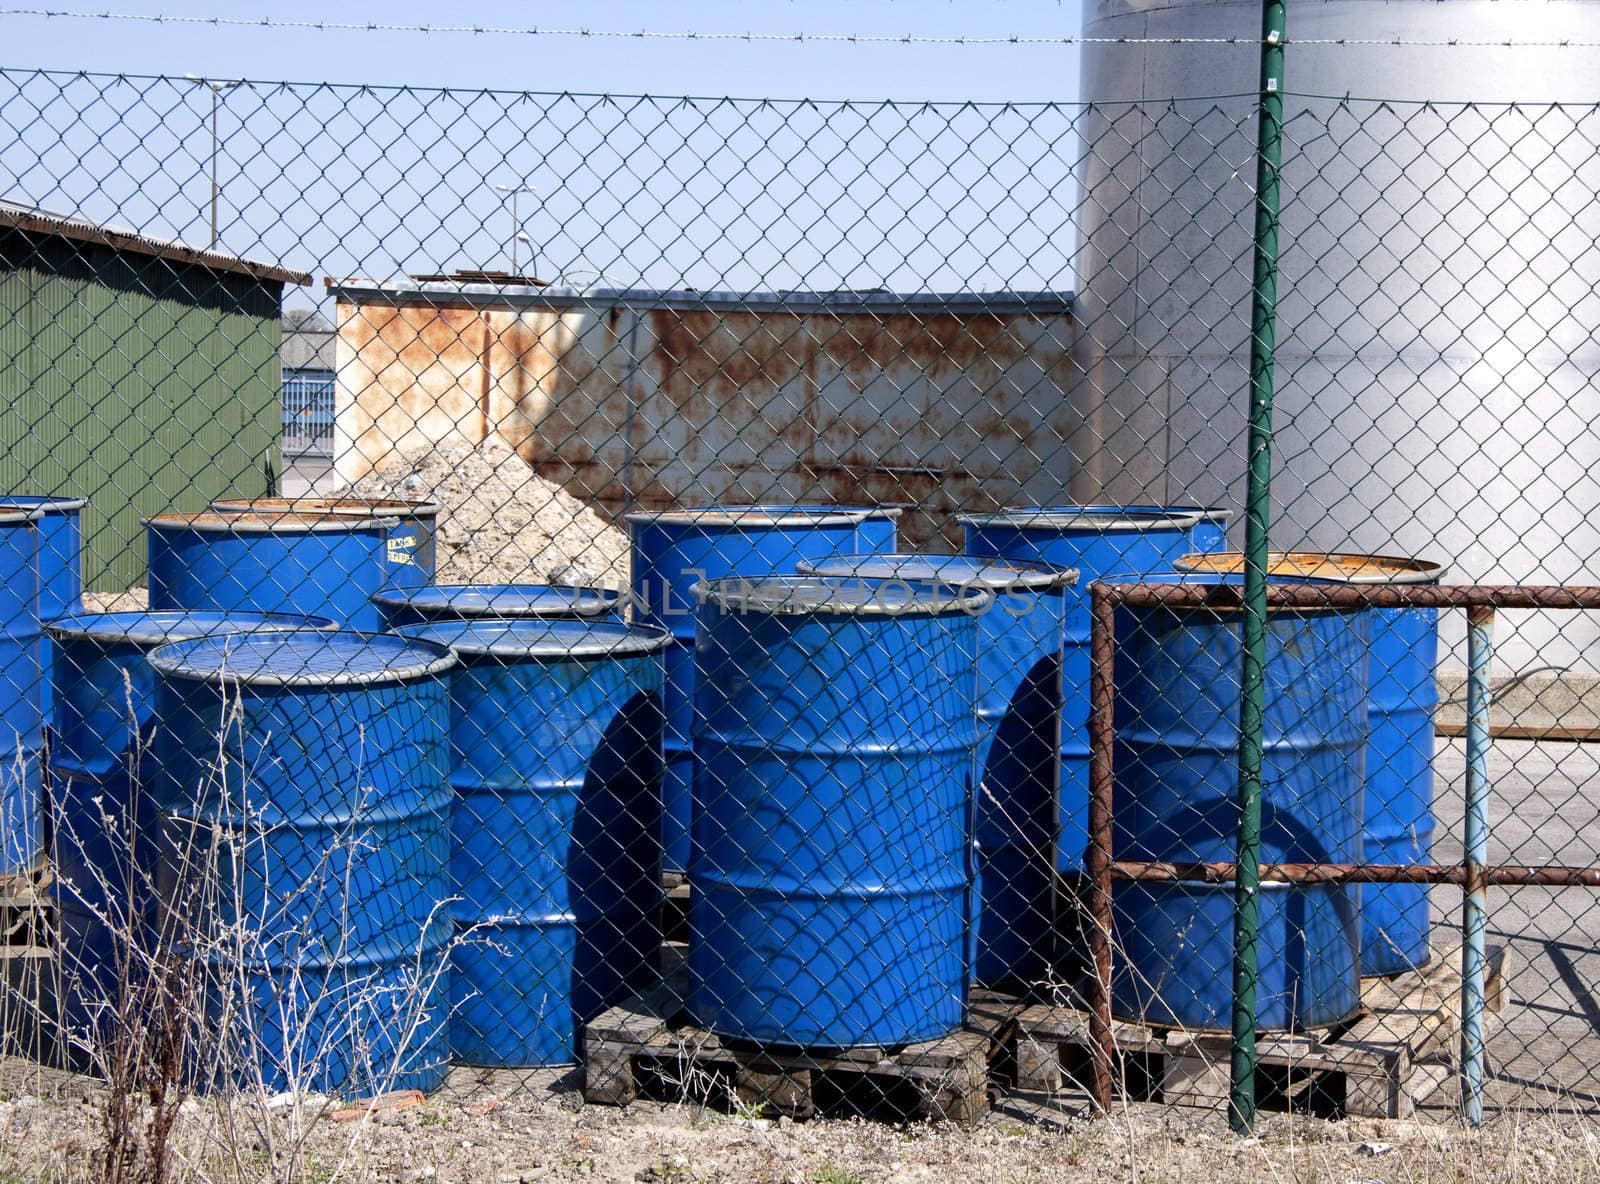 A few blue oil barrels